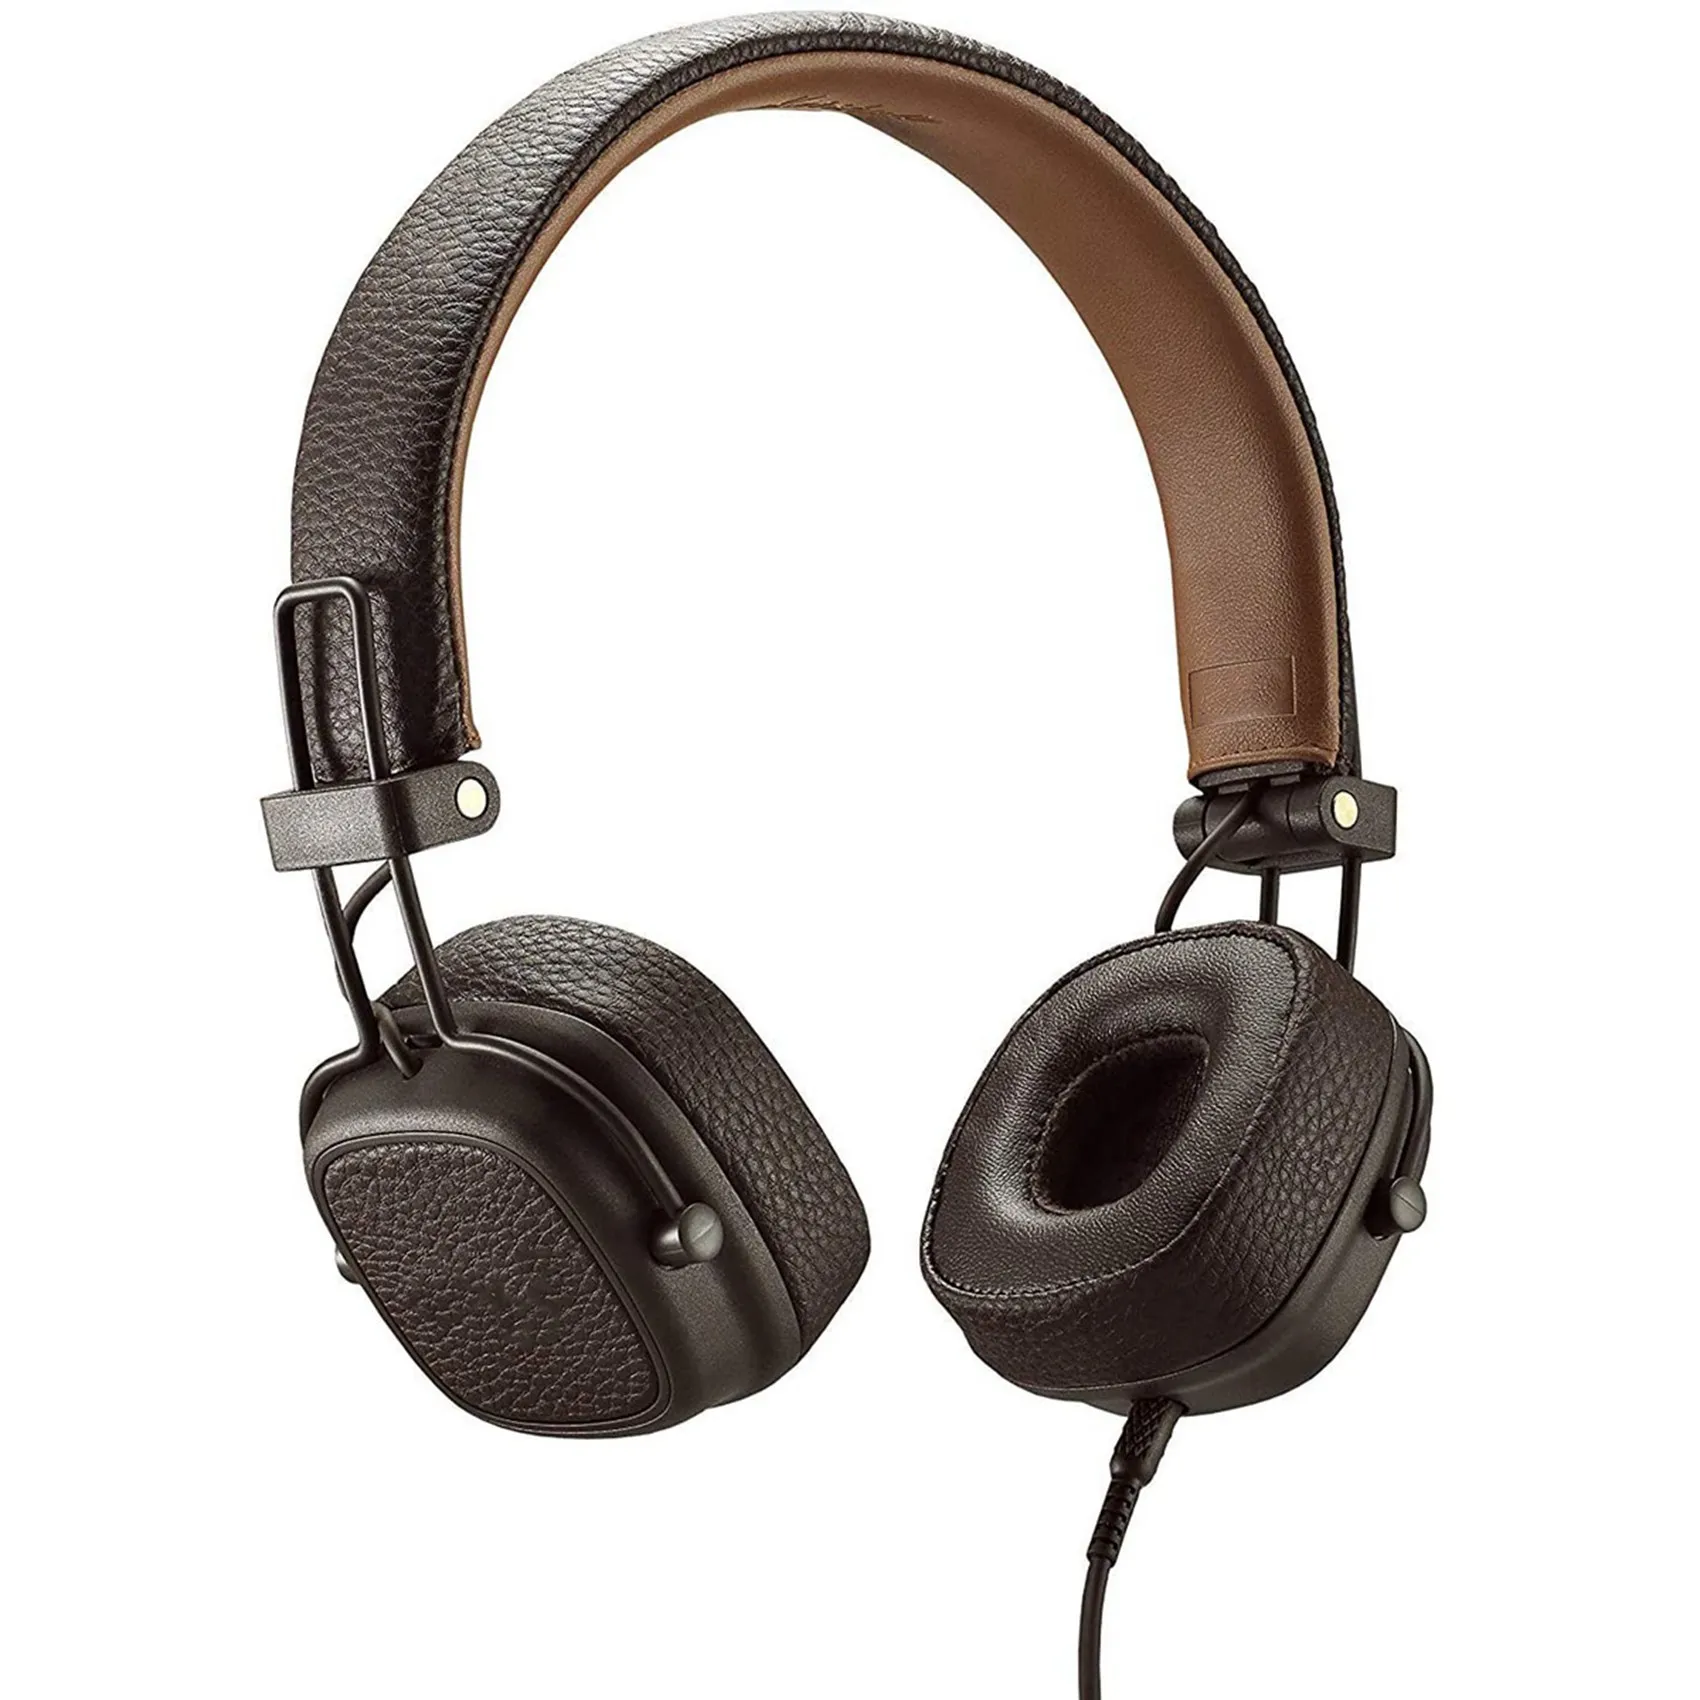 2 чифт PU кожени подложки за уши пяна антифони възглавница за уши с клип за слушалки Marshall Major III 3, кафяво и черно